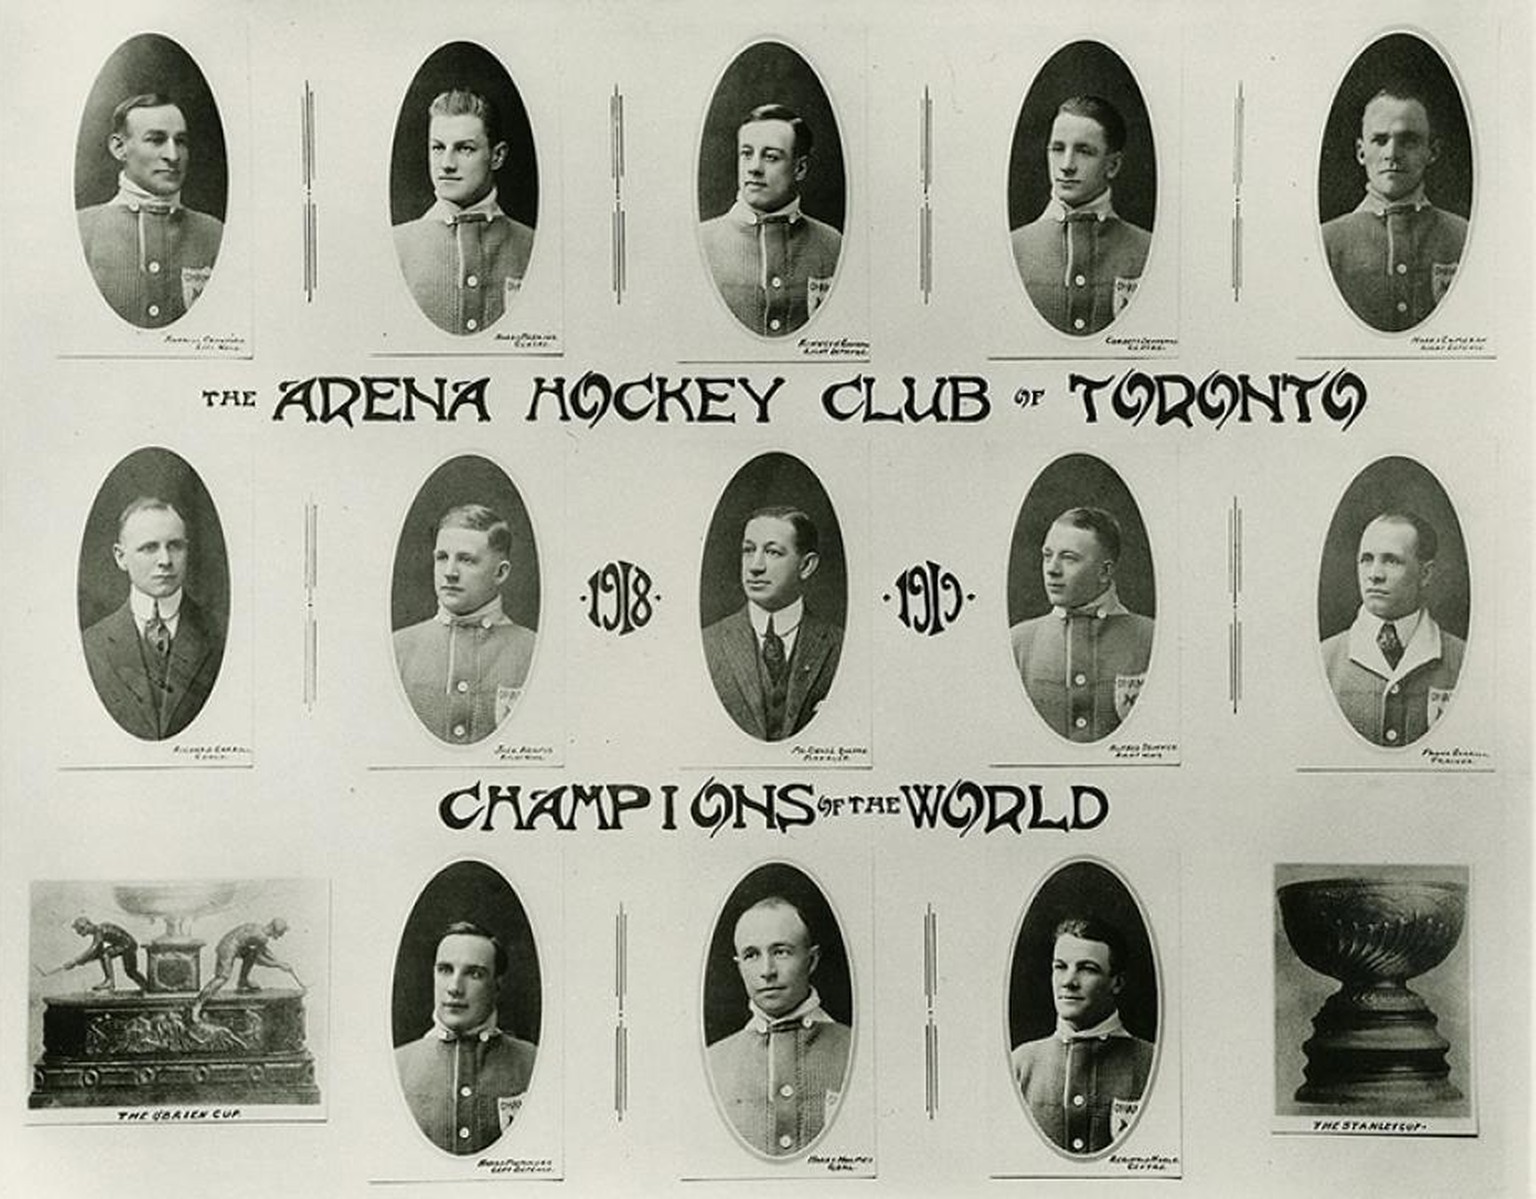 Mit diesem Team gewannen die Toronto Arenas, die damals eigentlich Toronto Torontos hiessen, 1918 in der ersten NHL-Saison den Stanley Cup.